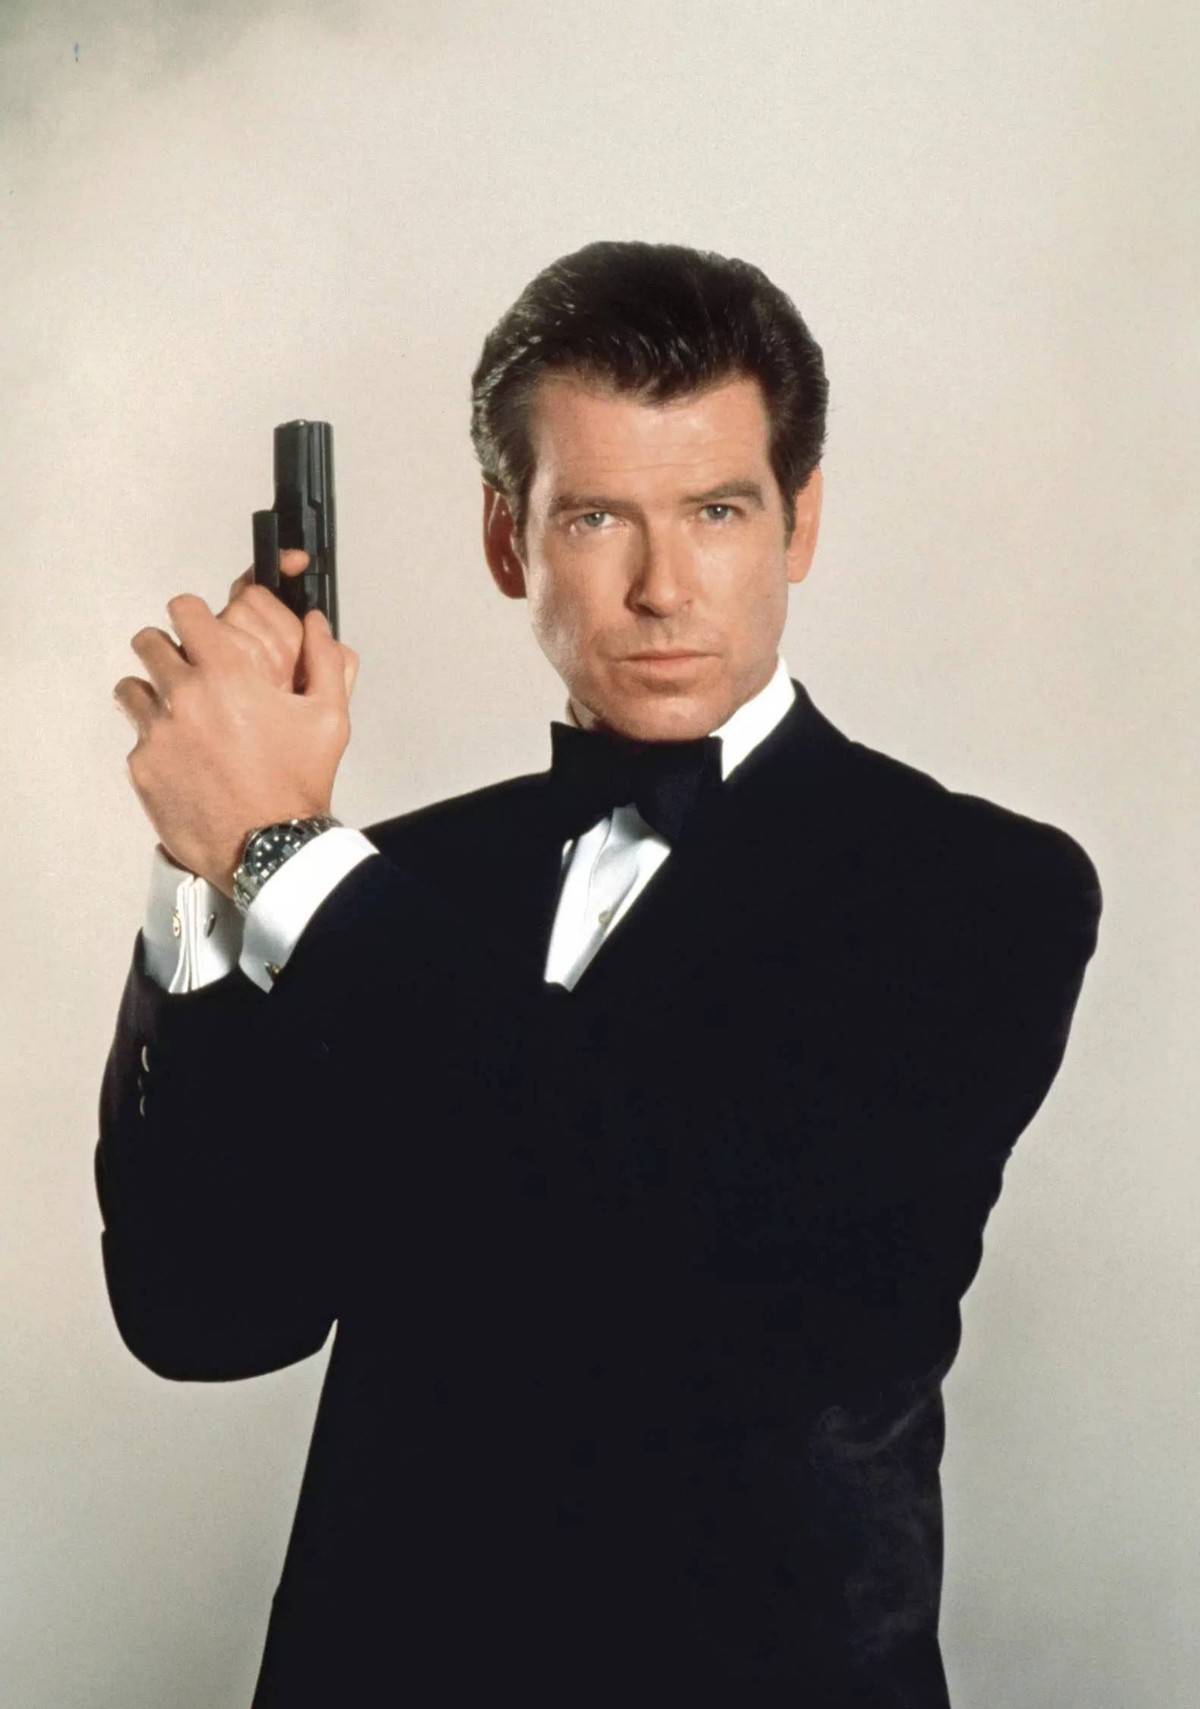 原创最帅007也来演超英布鲁斯南合作强森演命运博士网友梦幻阵容